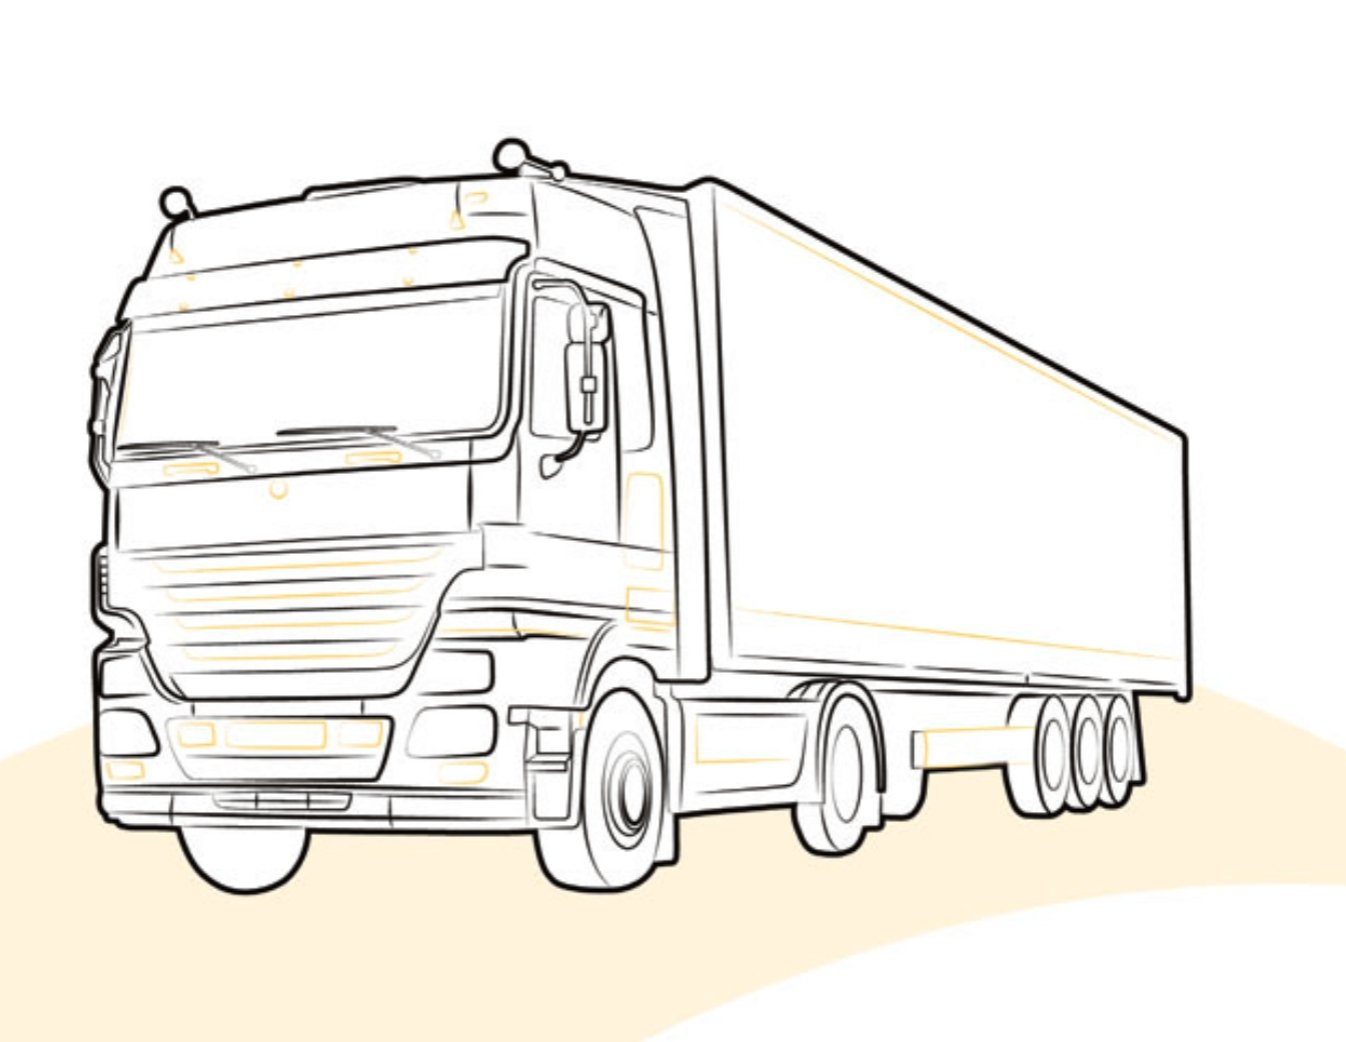 SUPPORTO CALZATOIA DI SICUREZZA per MERCEDES ACTROS | MP2 lato - Carrozzeria Truck